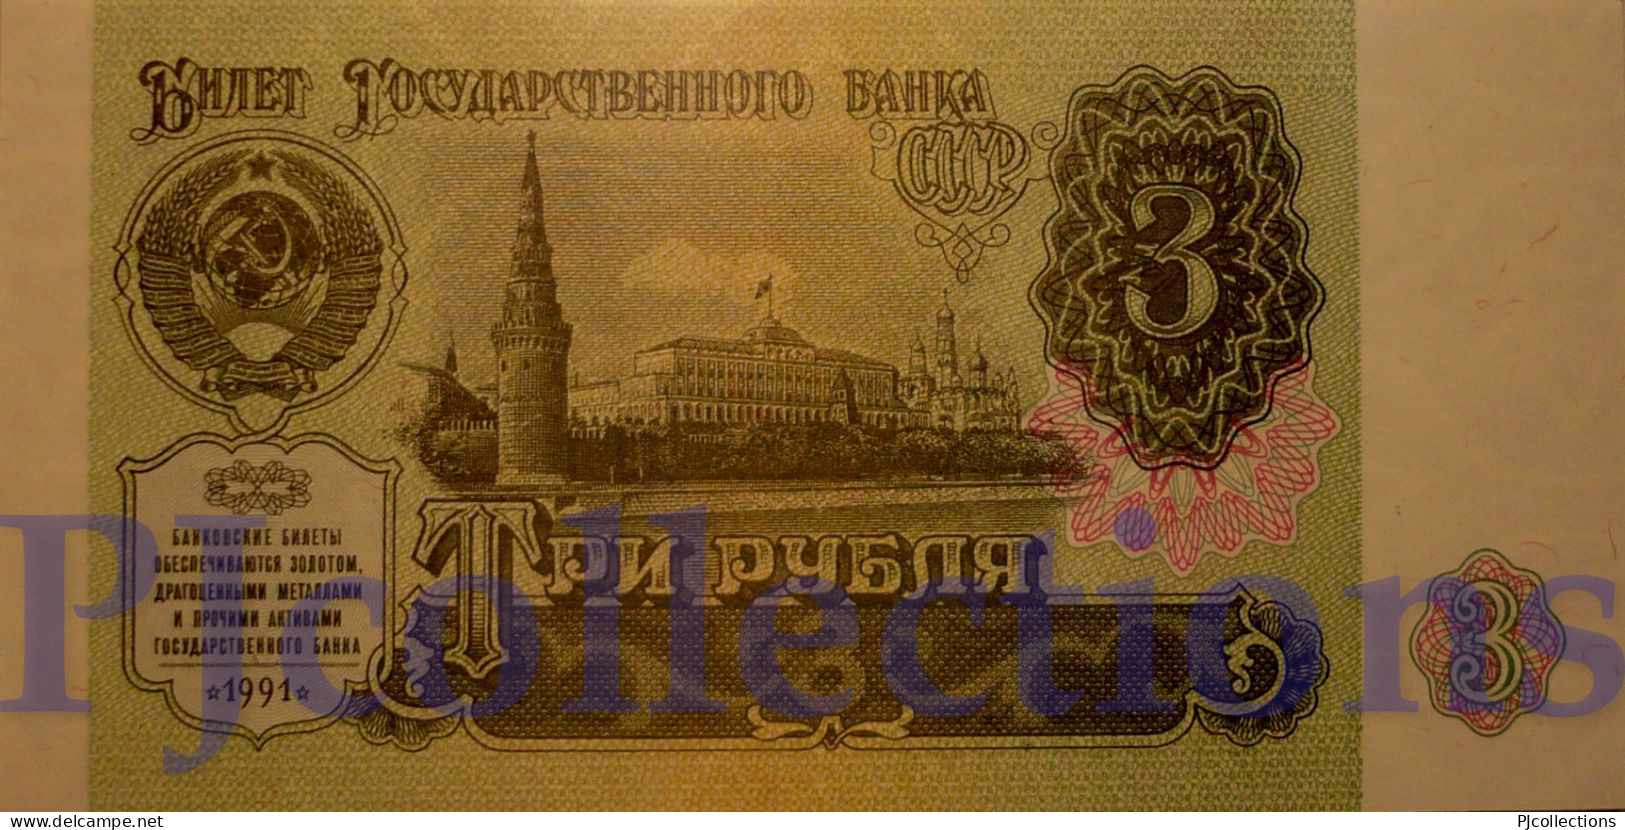 RUSSIA 3 RUBLES 1991 PICK 238a UNC - Rusia